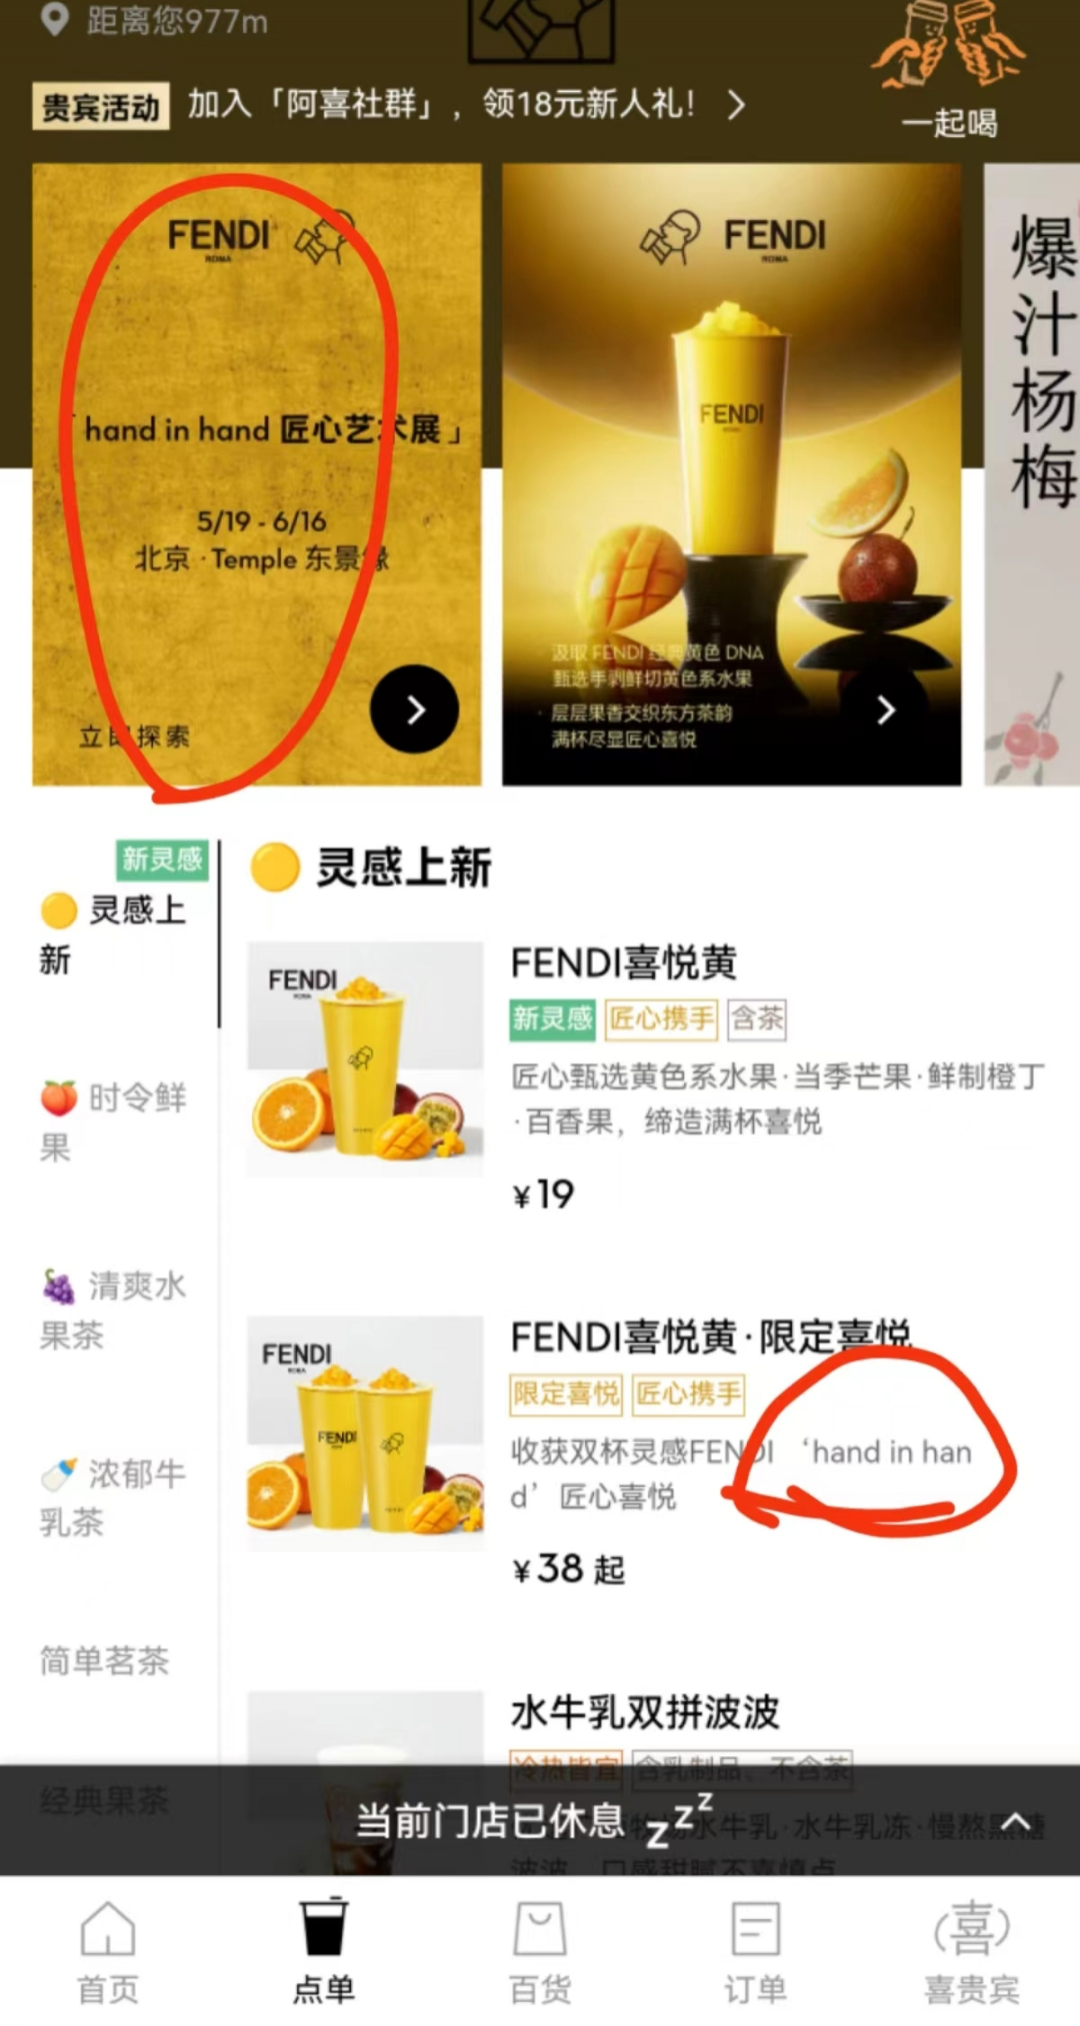 FENDI和喜茶刷屏，其他品牌联名能抄作业吗？